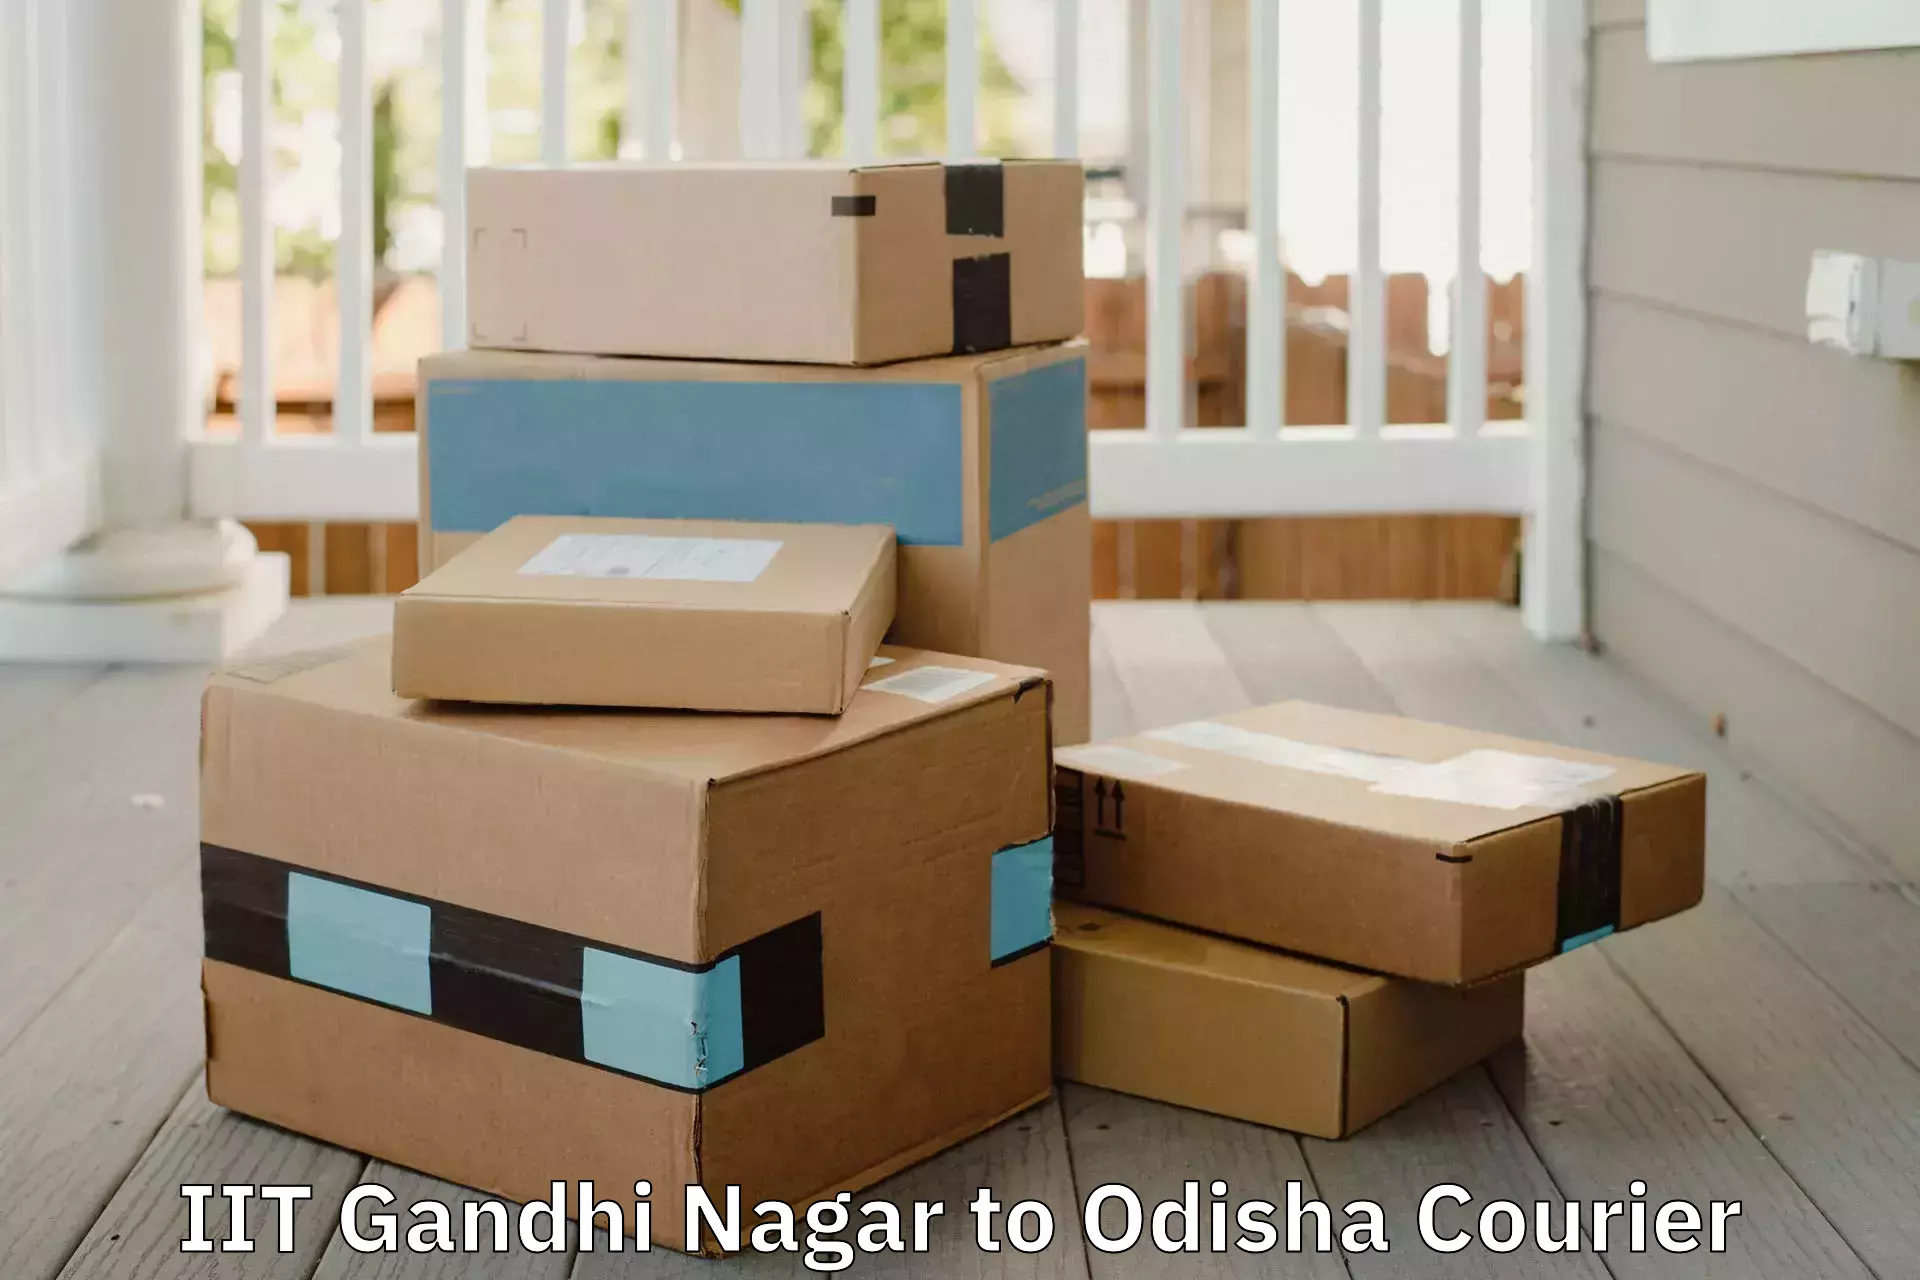 Furniture moving service IIT Gandhi Nagar to Anandapur